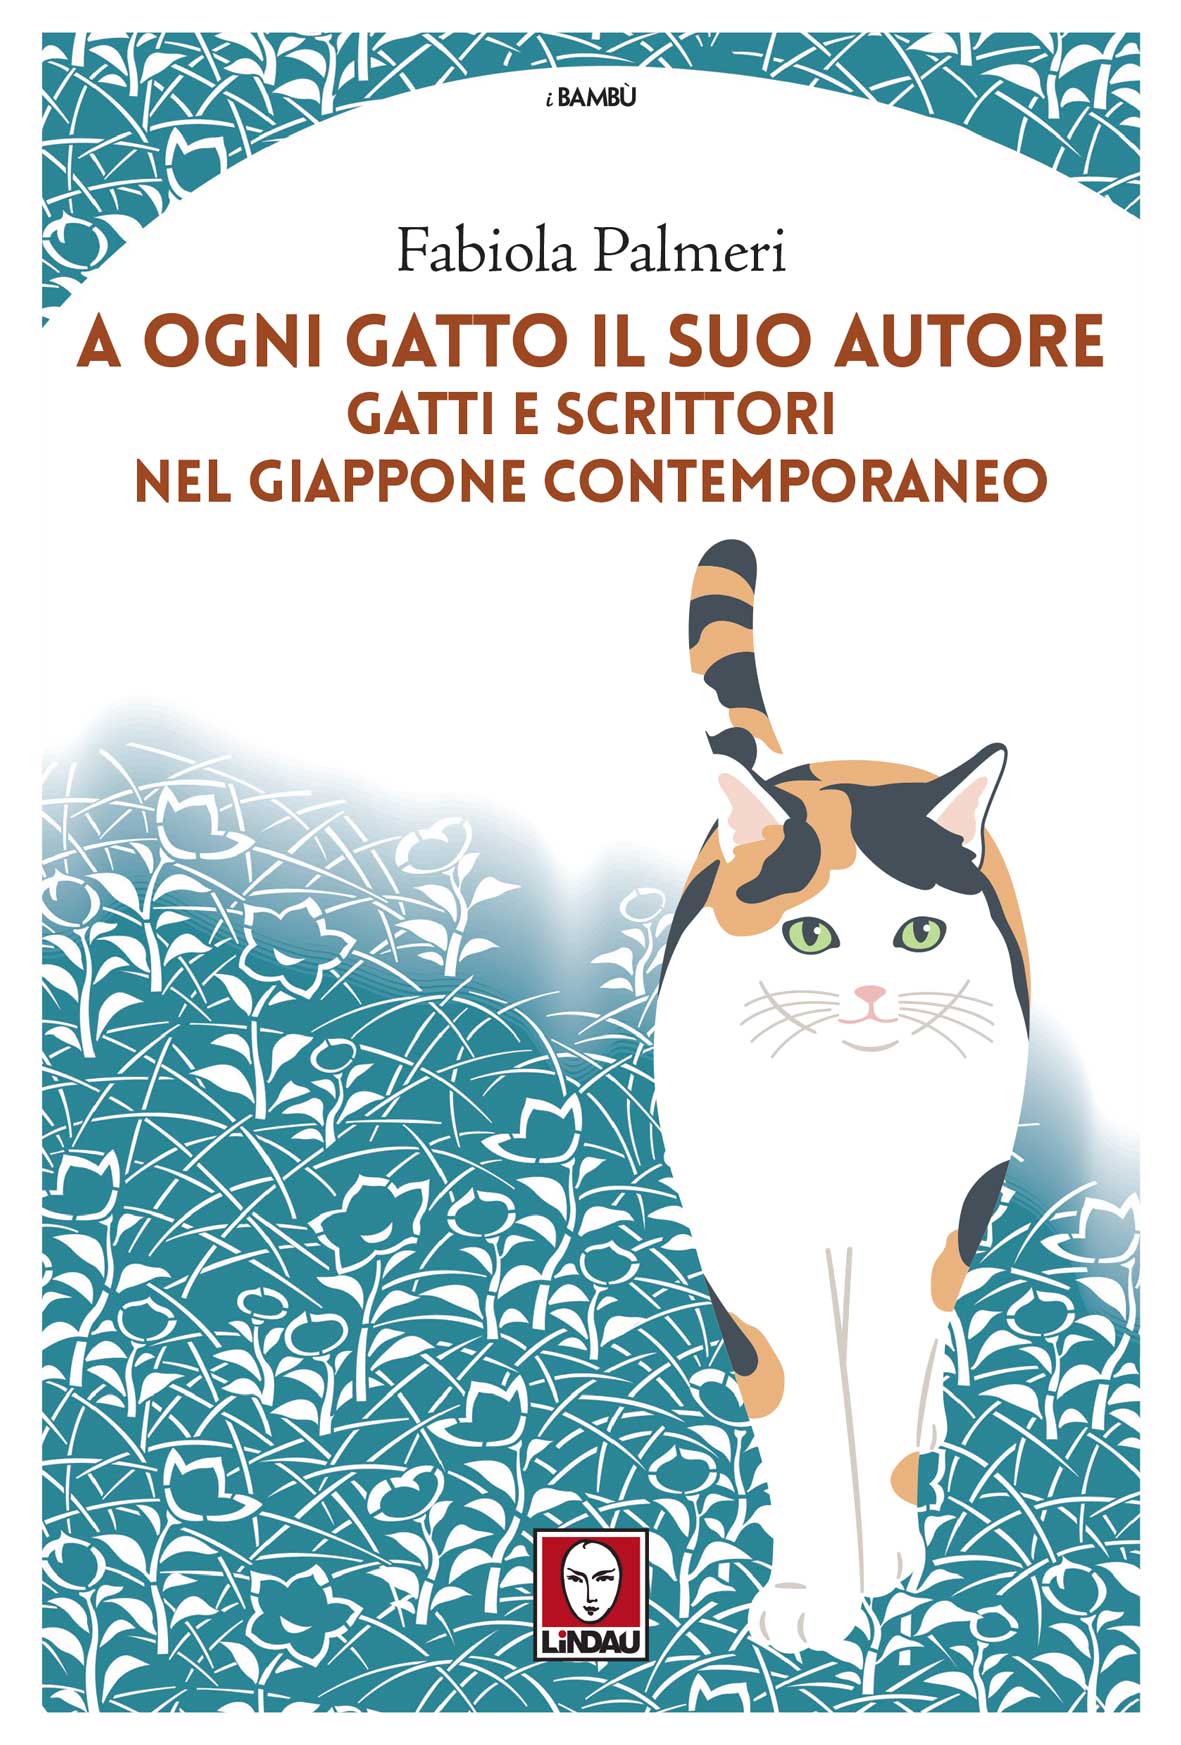 A ogni gatto il suo autore, Fabiola Palmeri, 9788833538952